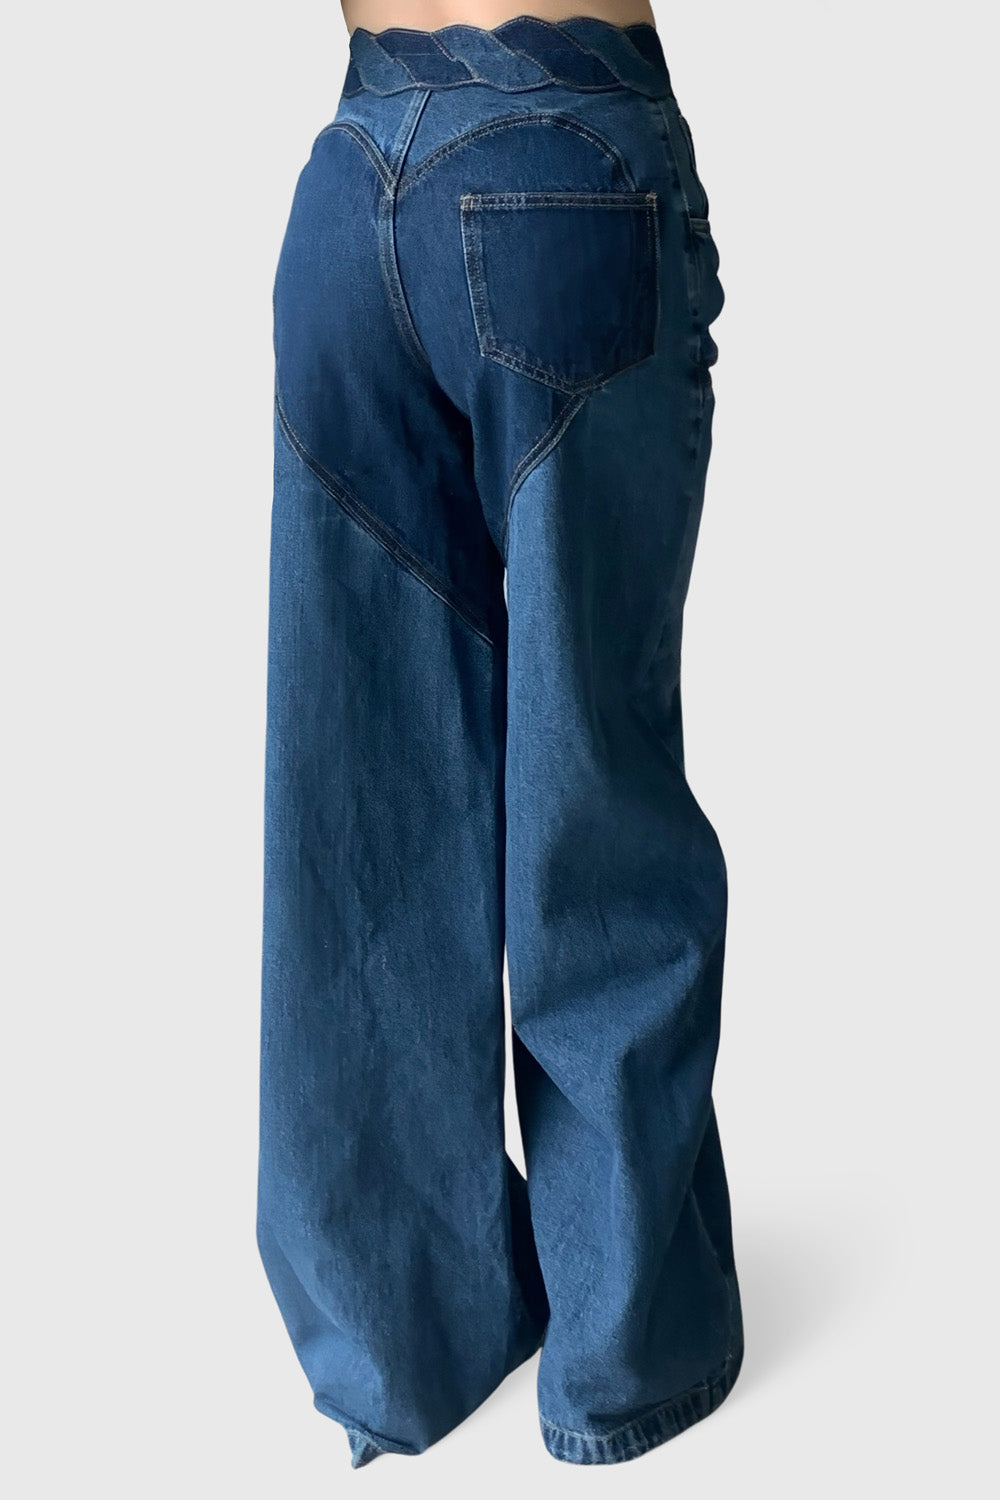 Szerokie dżinsy z rozcięciami z przodu - Niebieskie